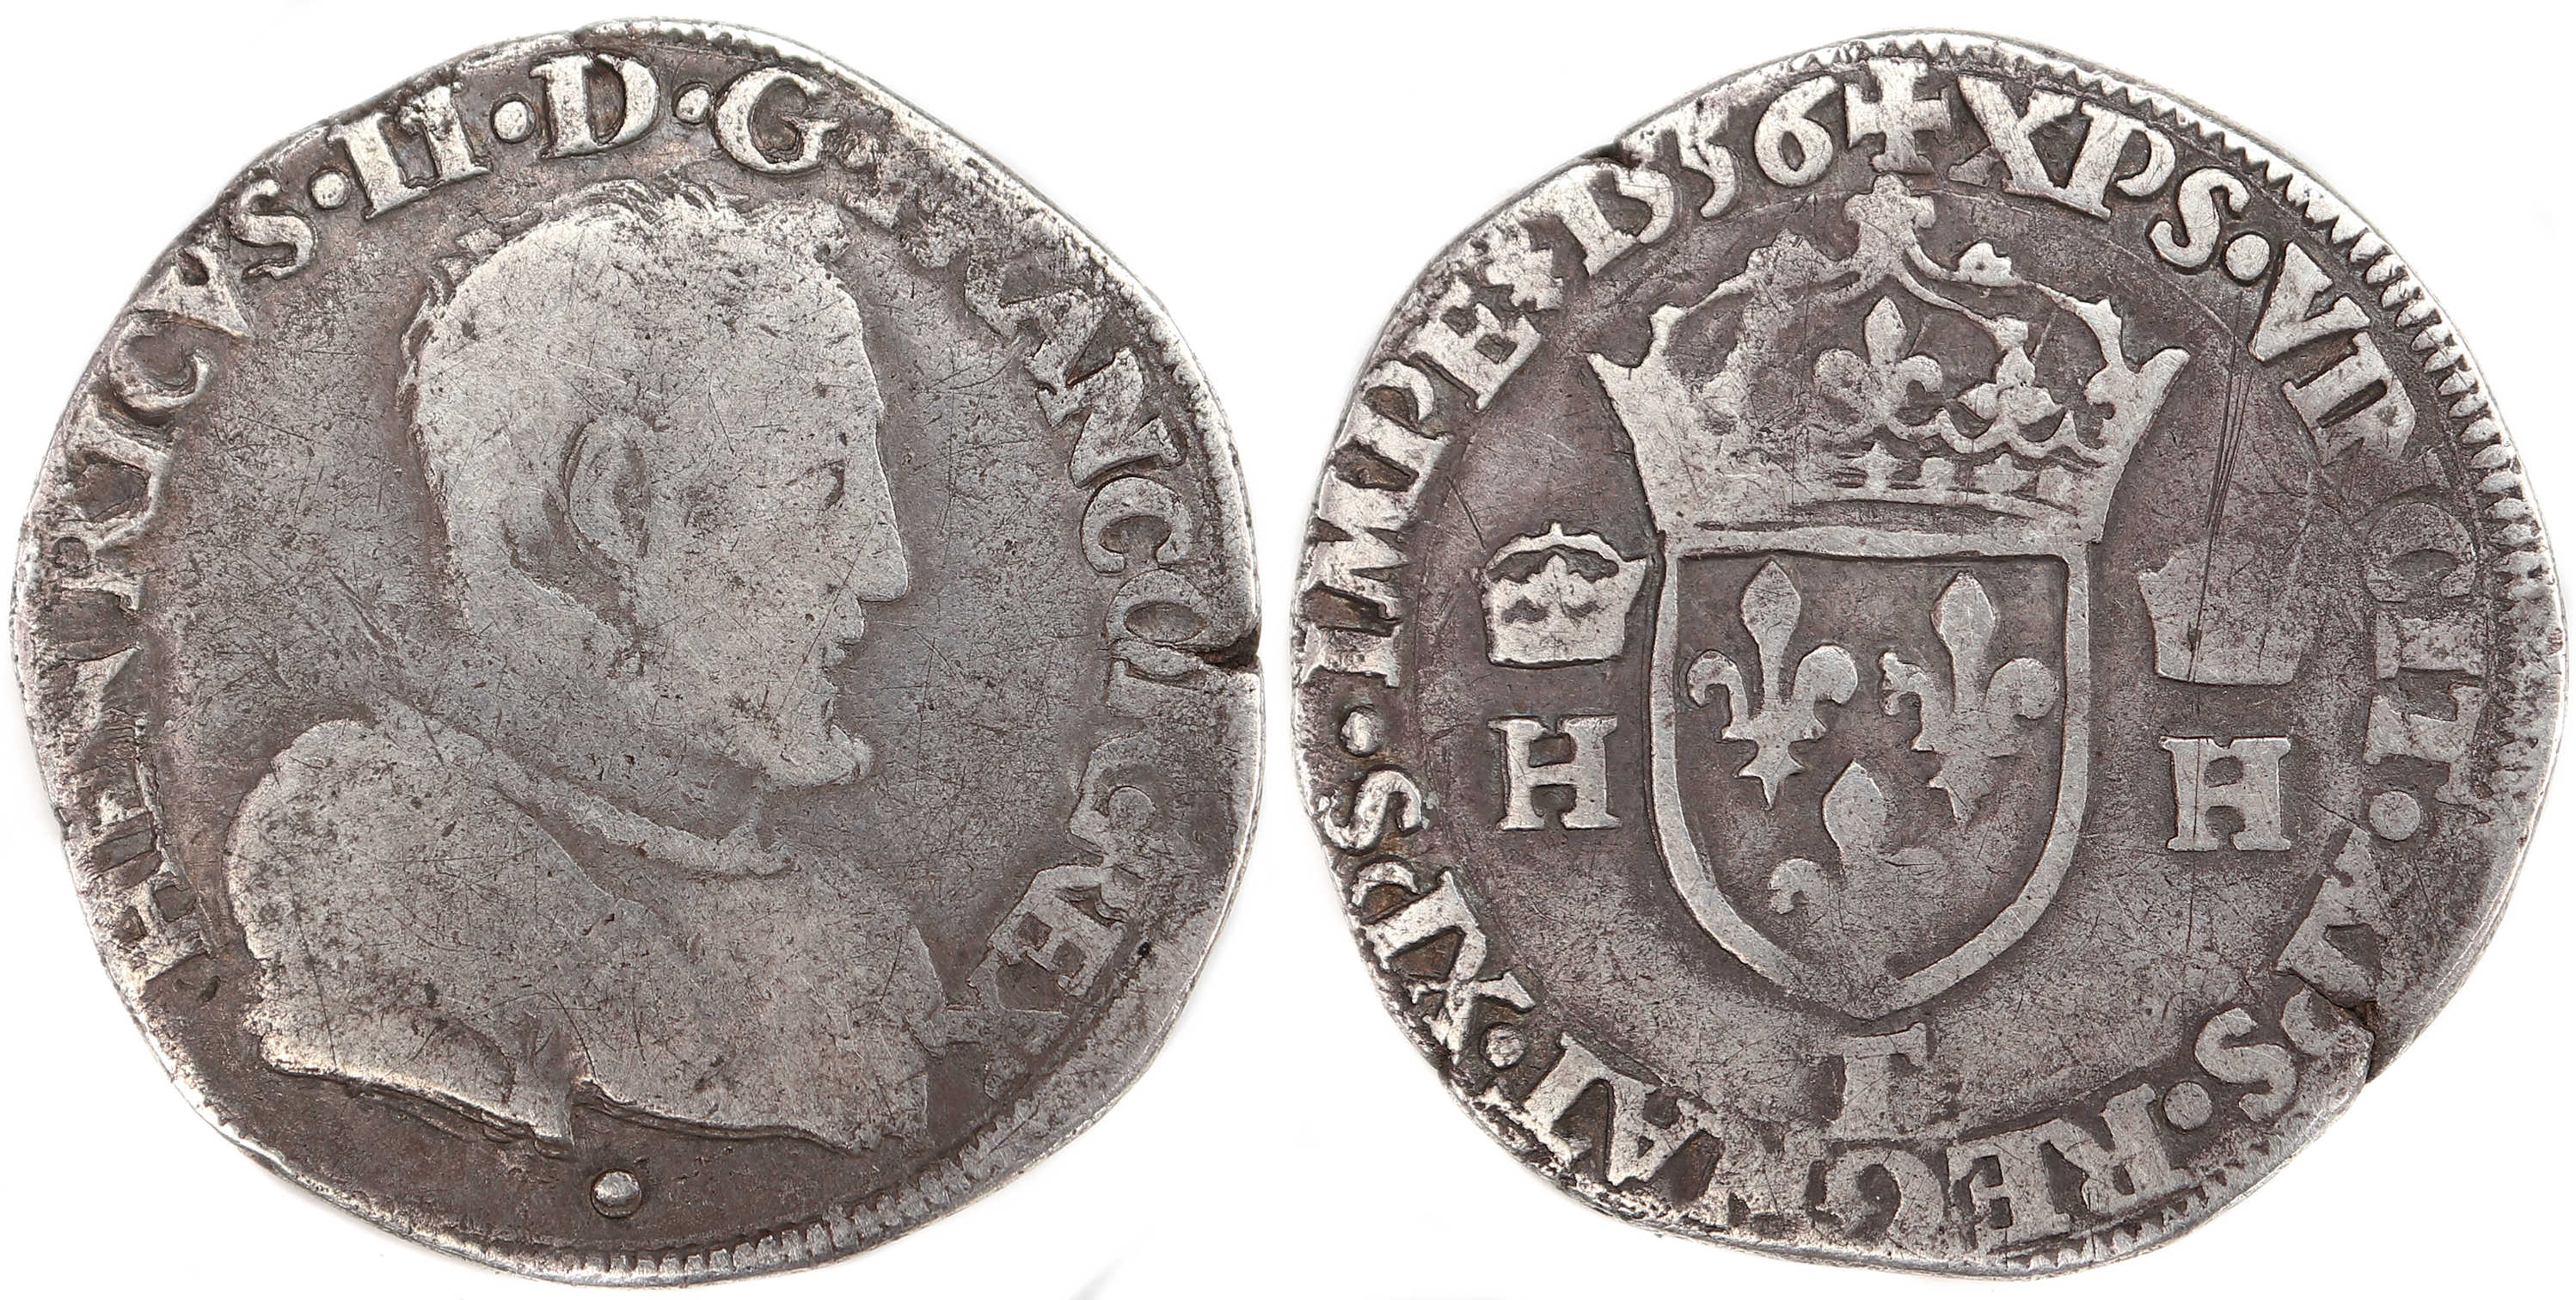 Monnaies royales francaises HENRI II 1556 NANTES